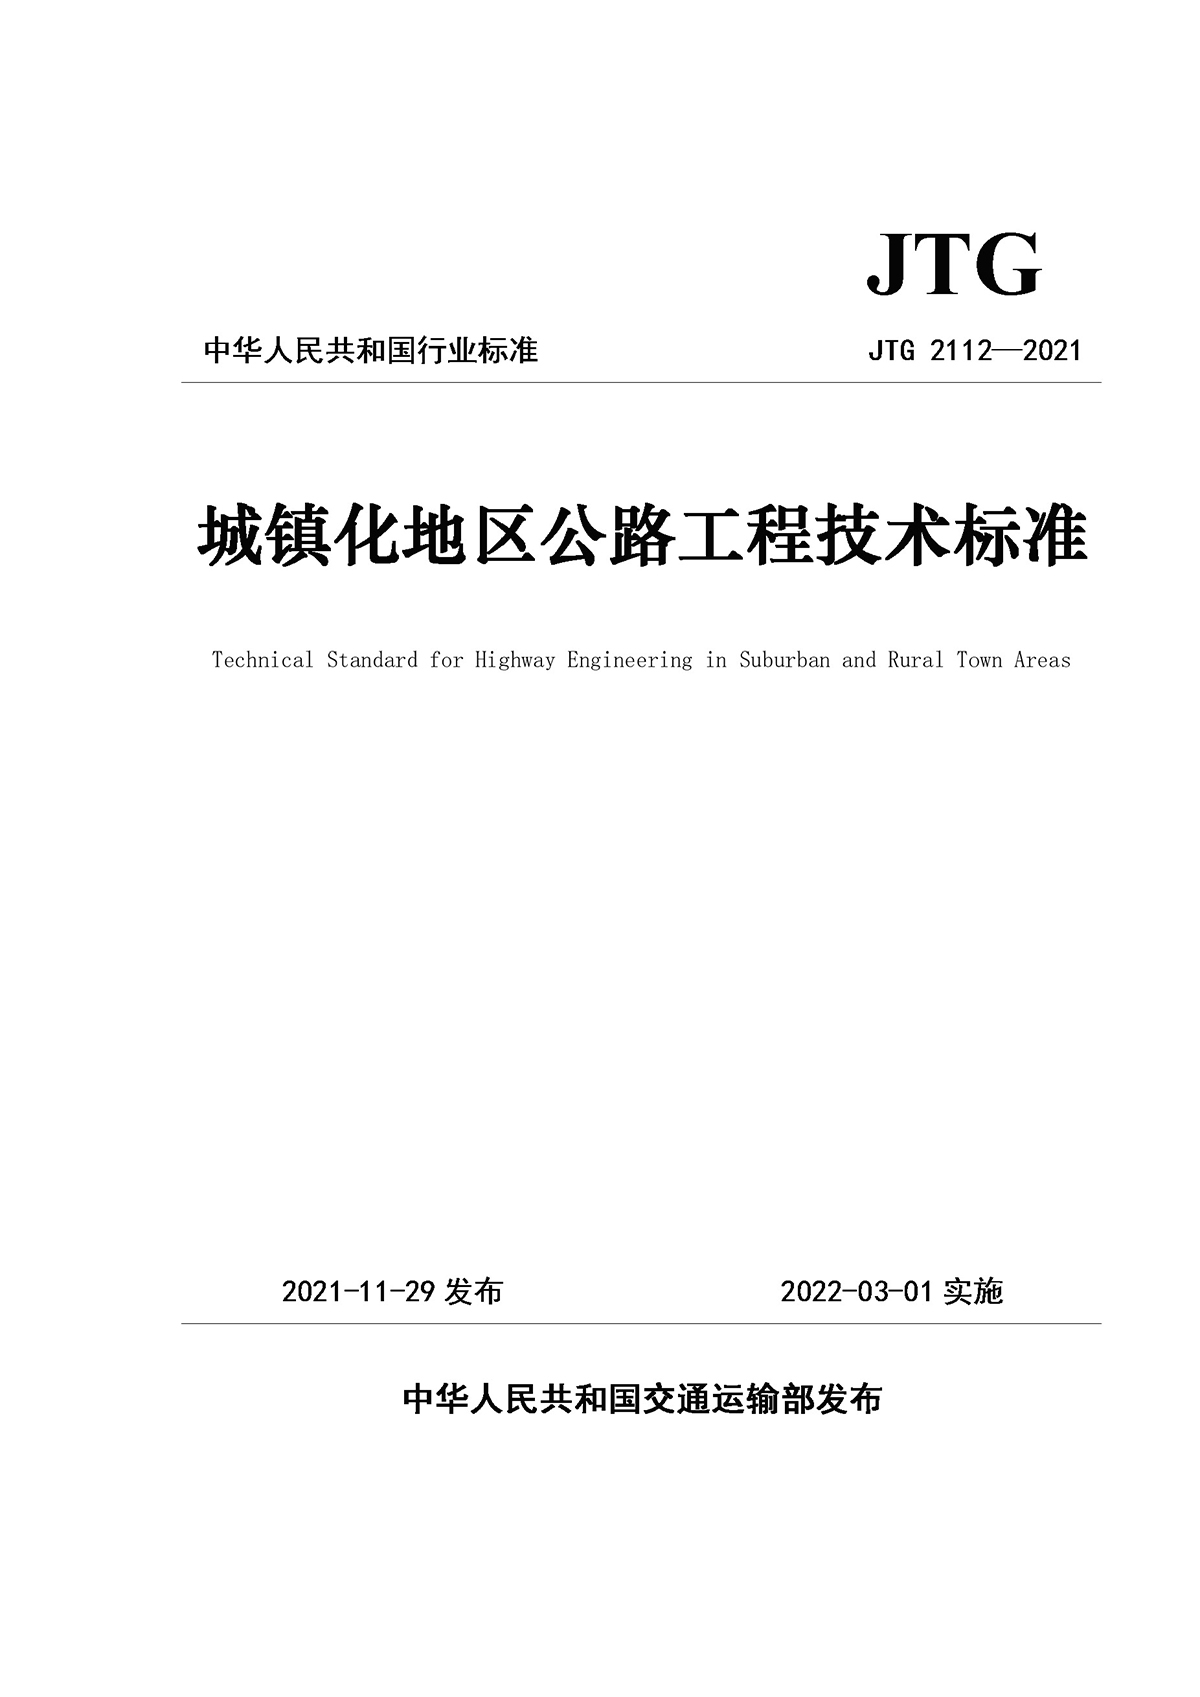 《城鎮化地區公路工程技術標準》（JTG 2112—2021）_頁面_1.jpg